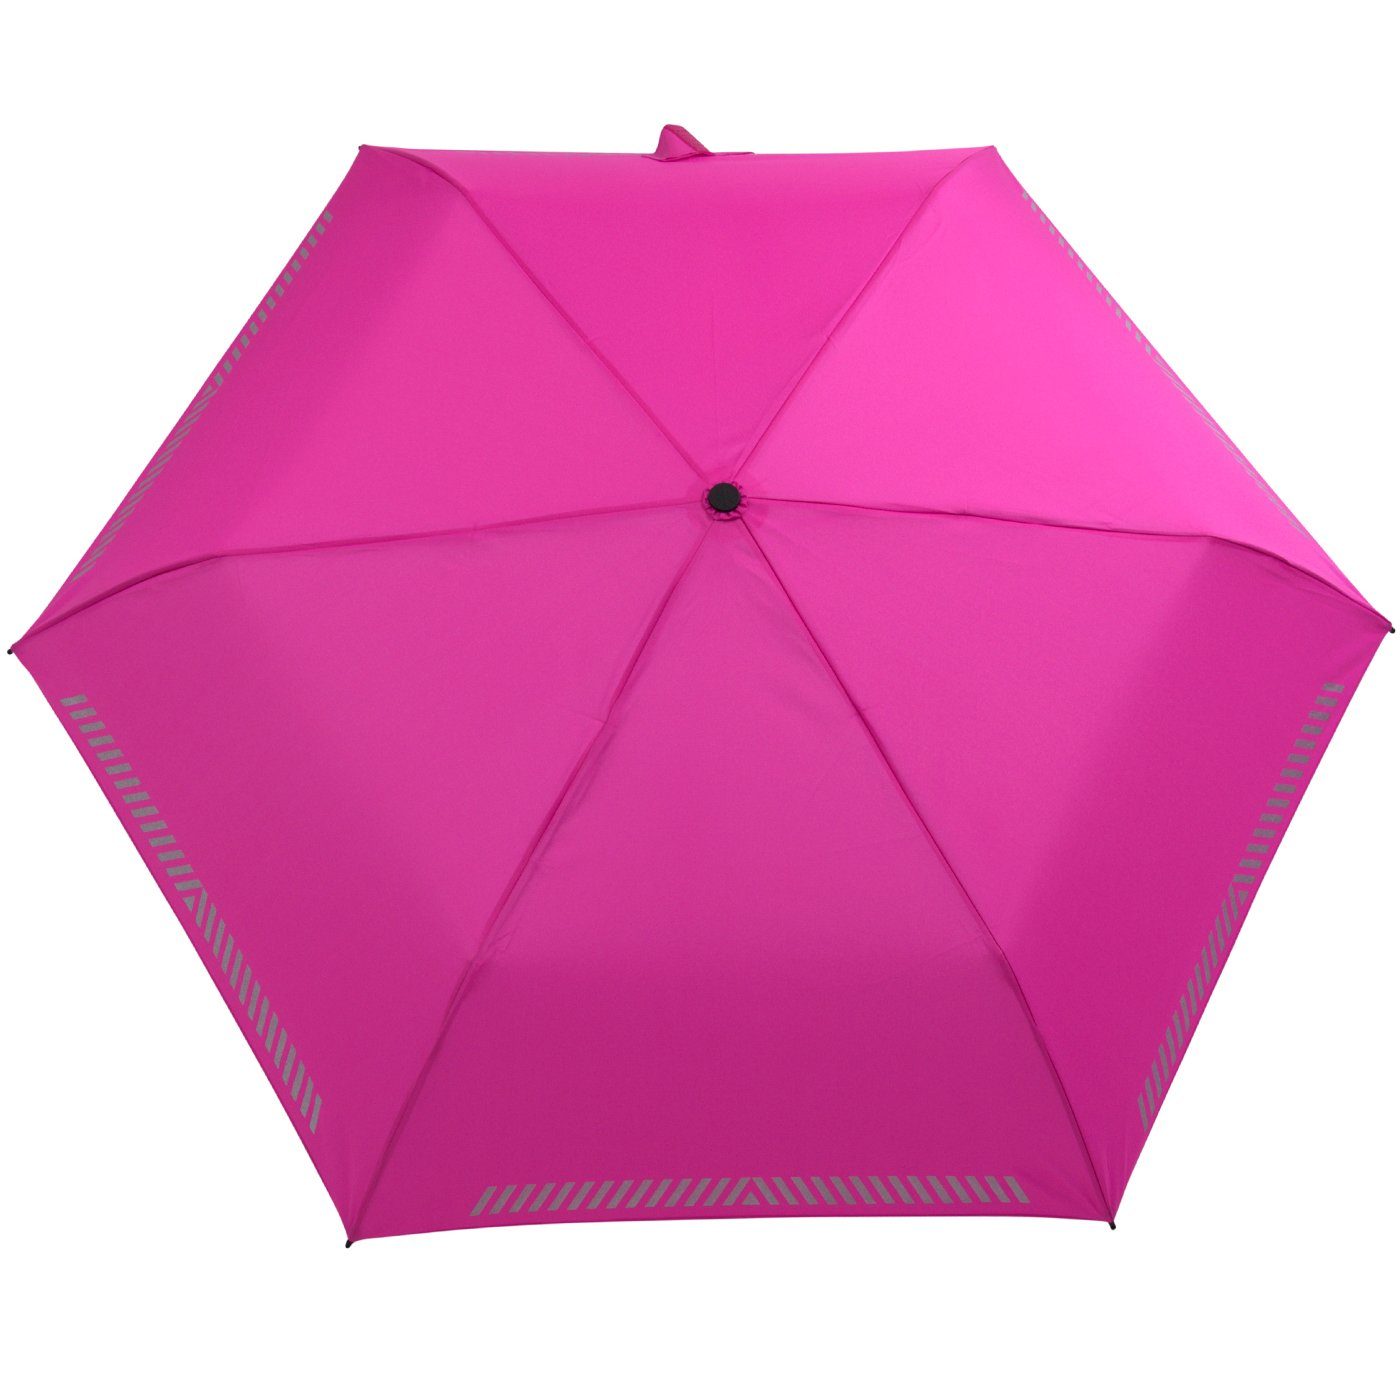 reflektierend, iX-brella mit - Sicherheit Taschenregenschirm Kinderschirm pink Auf-Zu-Automatik, neon Reflex-Streifen durch